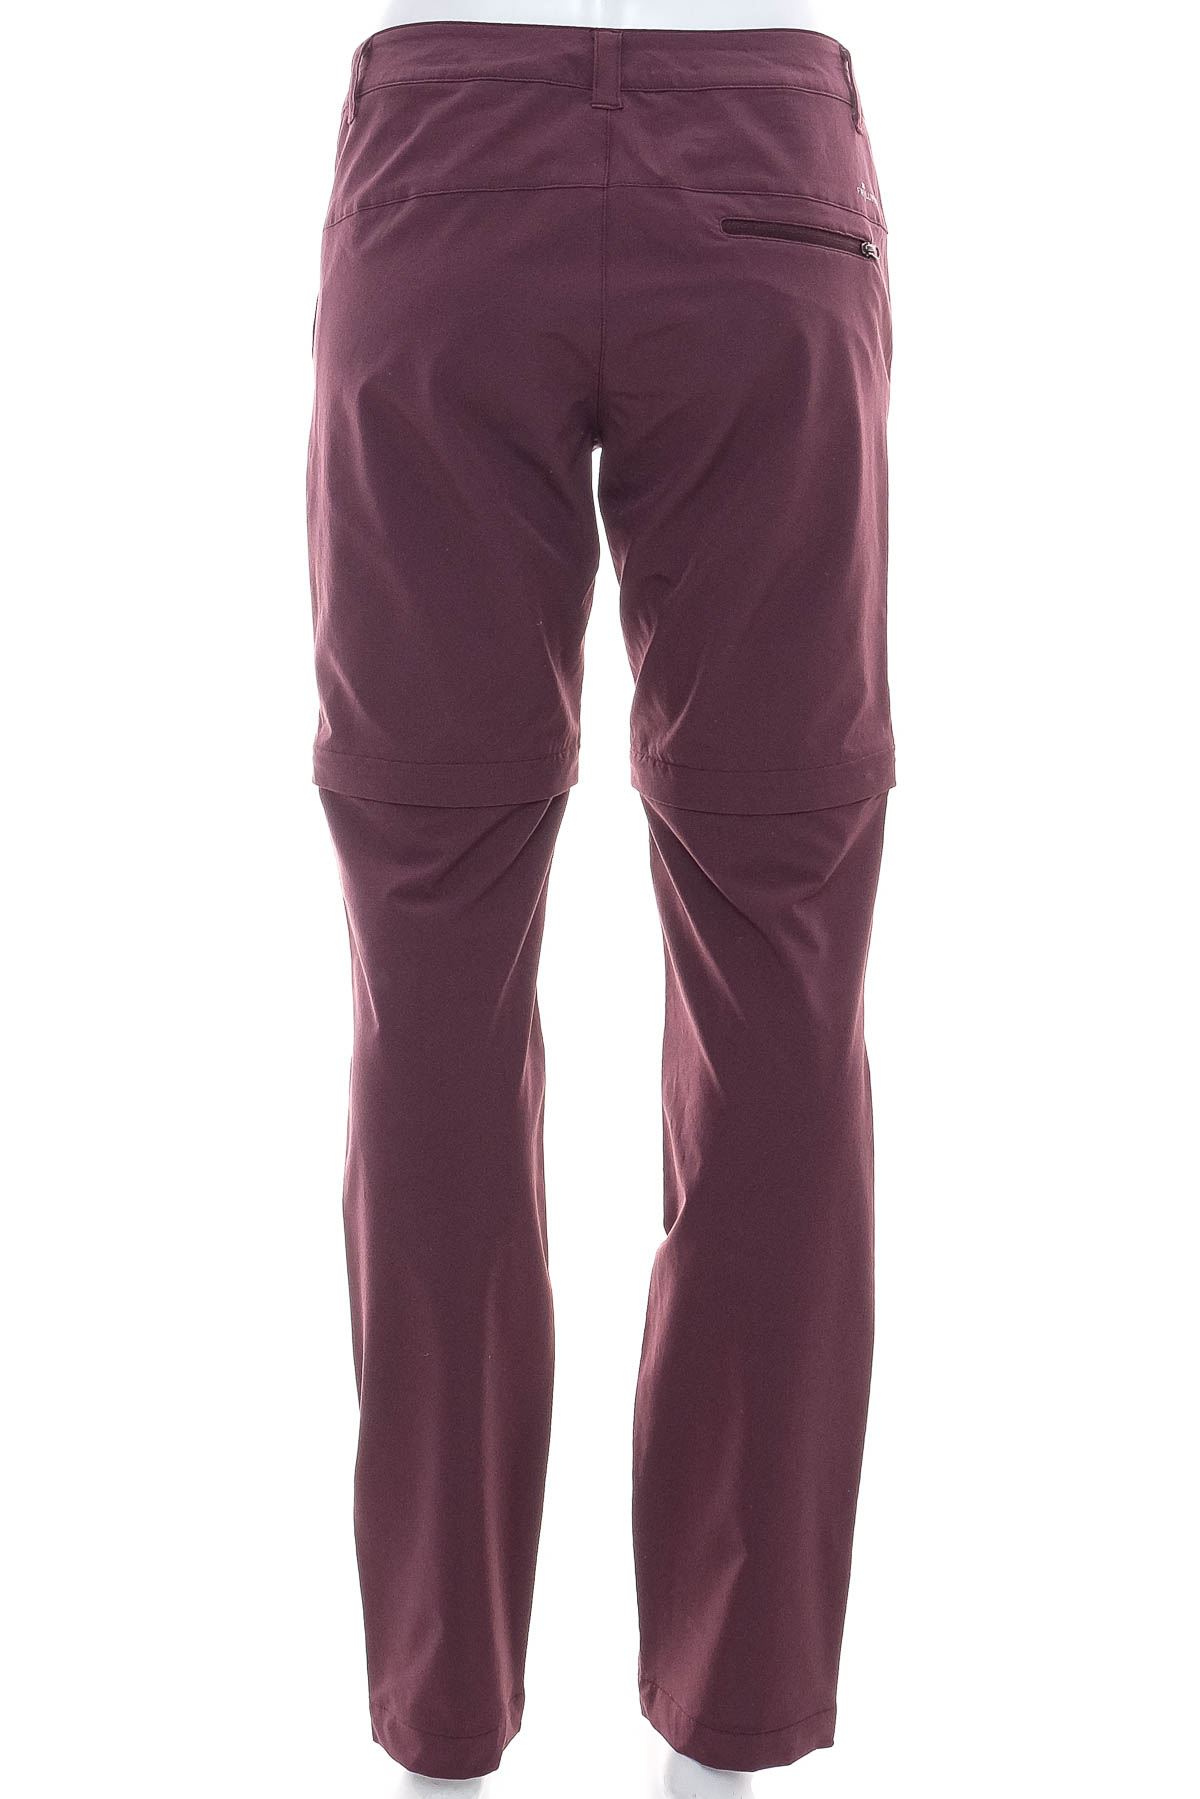 Pantalon pentru fată - FRILUFTS - 1